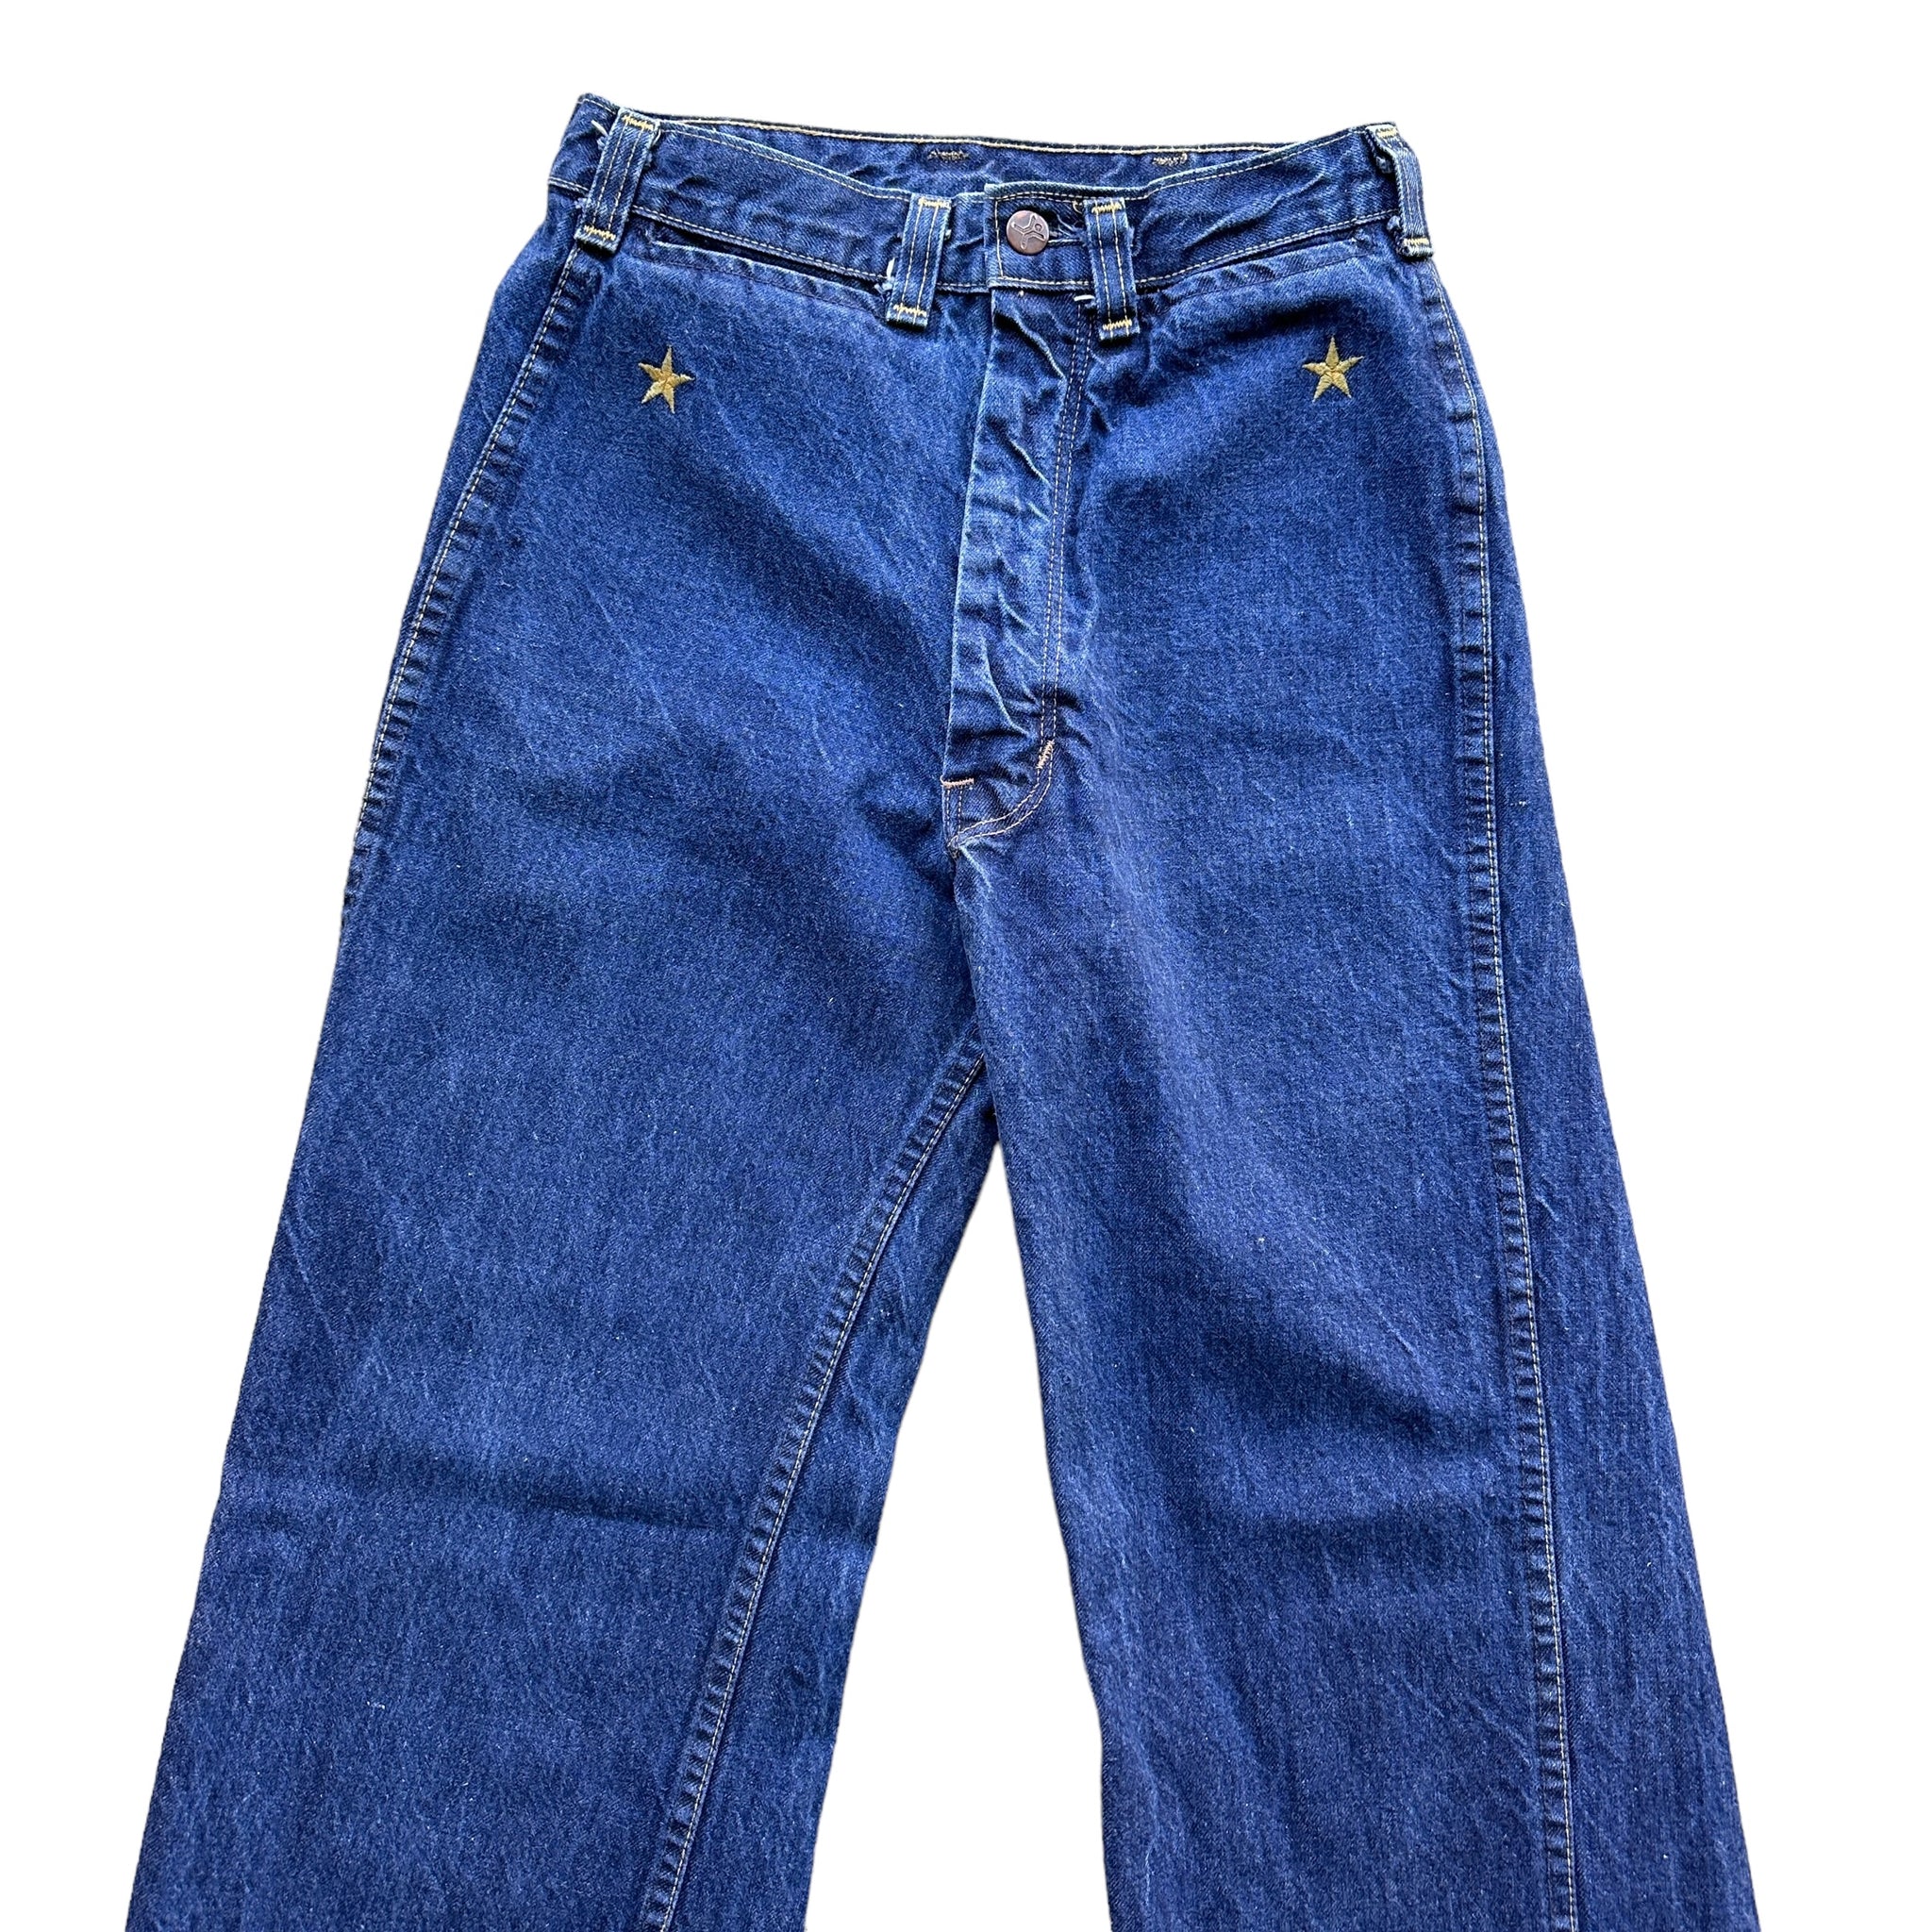 80s Howick riders wide leg women’s jeans 26/35